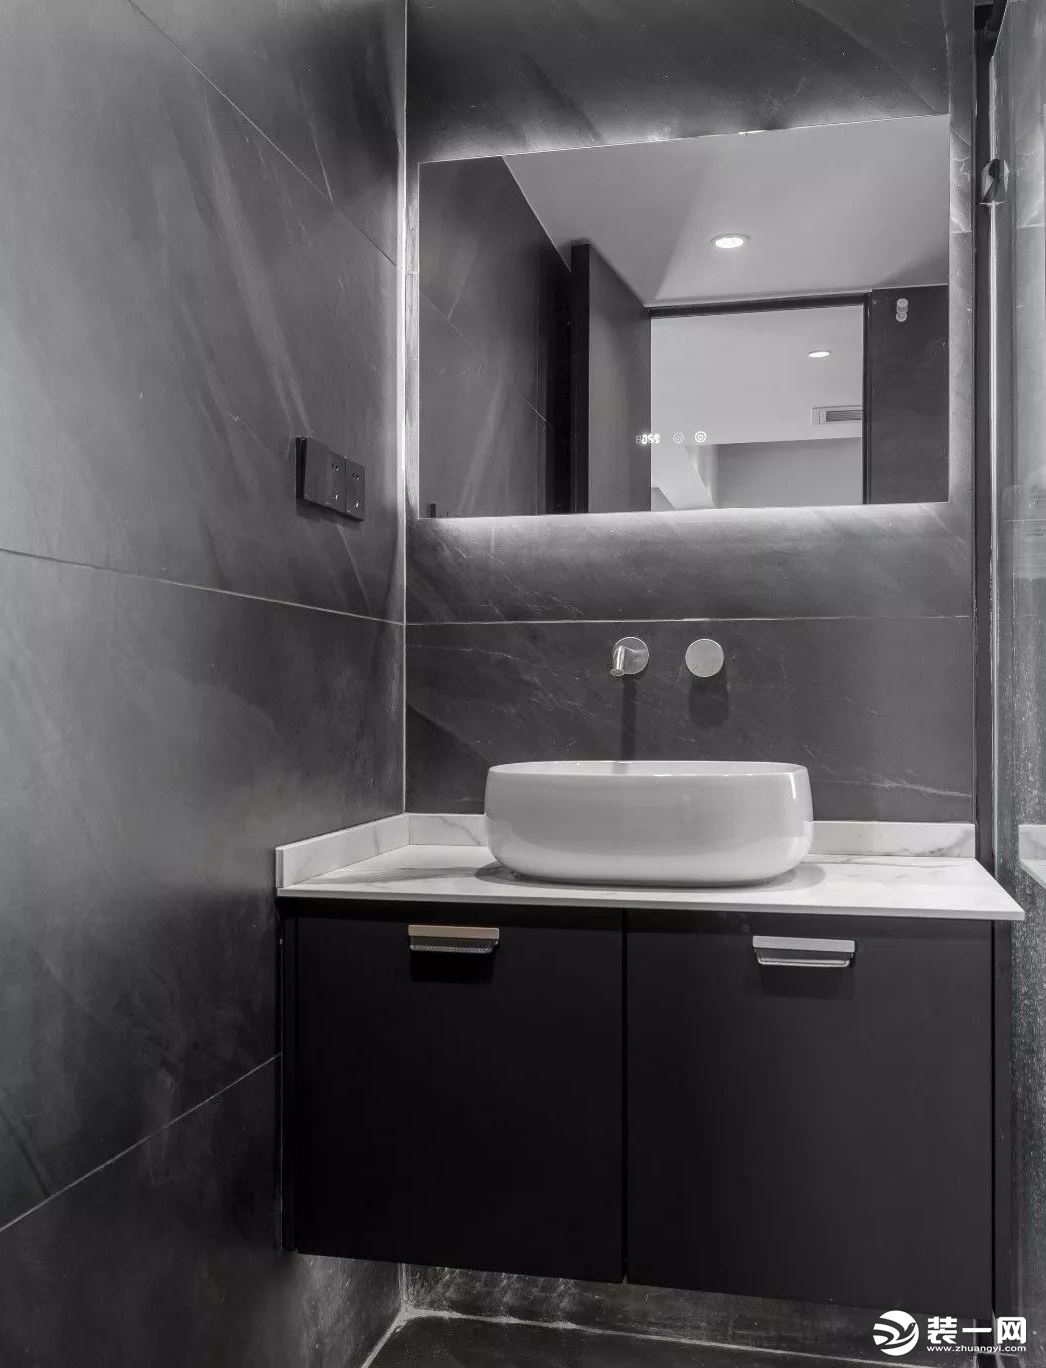 卫生间干湿区域划分，镜柜是不错的选择，既节省空间，又可收纳洗漱用品。